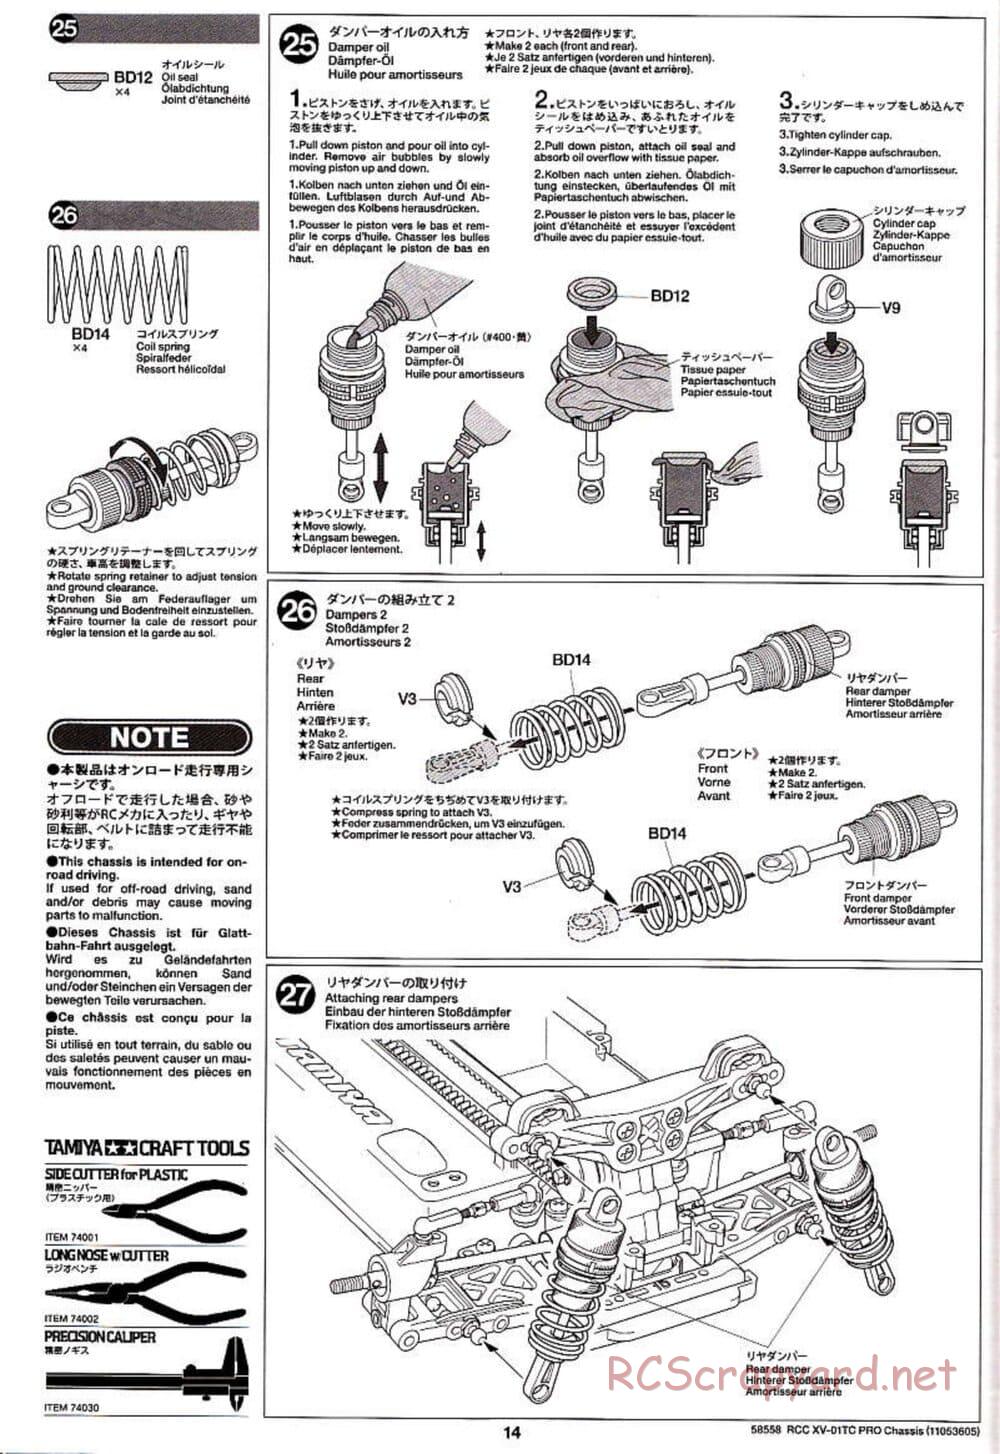 Tamiya - XV-01TC Chassis - Manual - Page 14